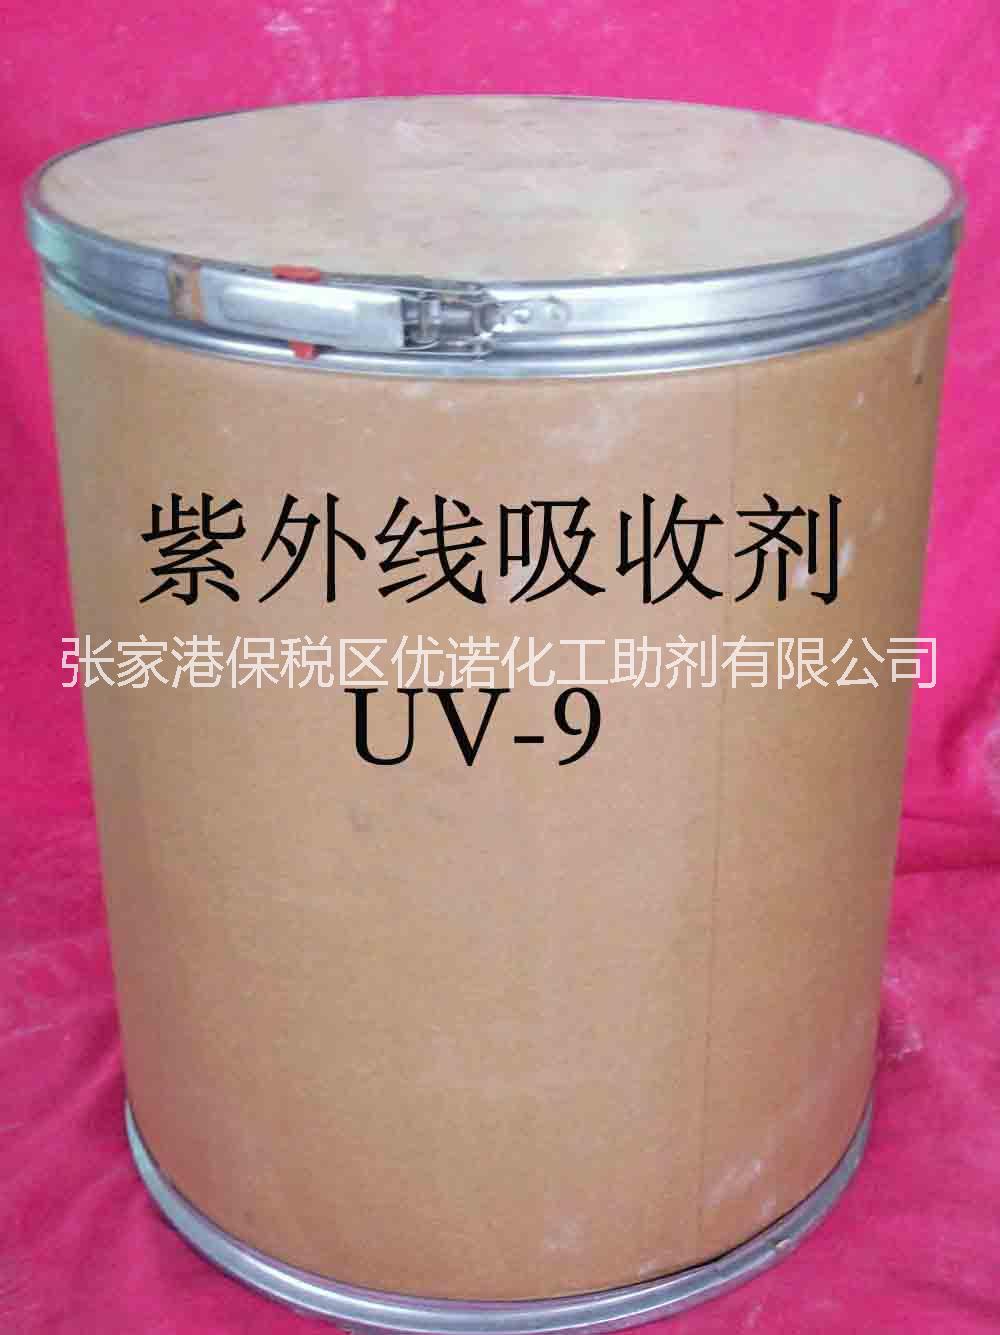 紫外线吸收剂UV-9 紫外线吸收剂UV-9价格 紫外线吸收剂厂家